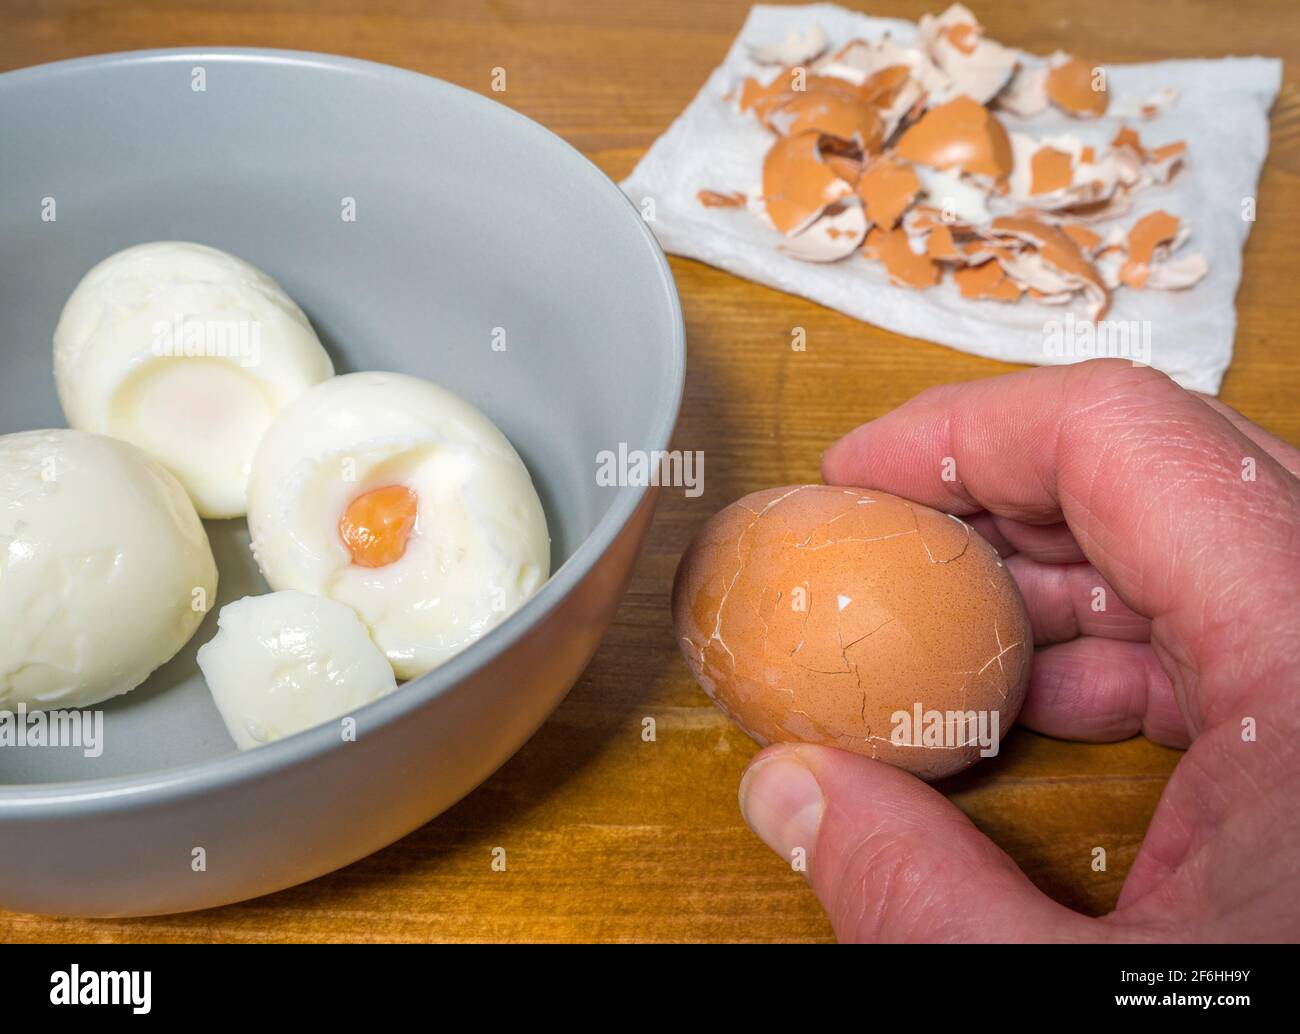 Nahaufnahme der Hand eines Mannes, die ein hart gekochtes Ei auf einer Kiefer-Arbeitsplatte / Theke knackt, neben einigen entfernten Schalen auf einer Serviette und einer Schüssel geschälte Eier. Stockfoto